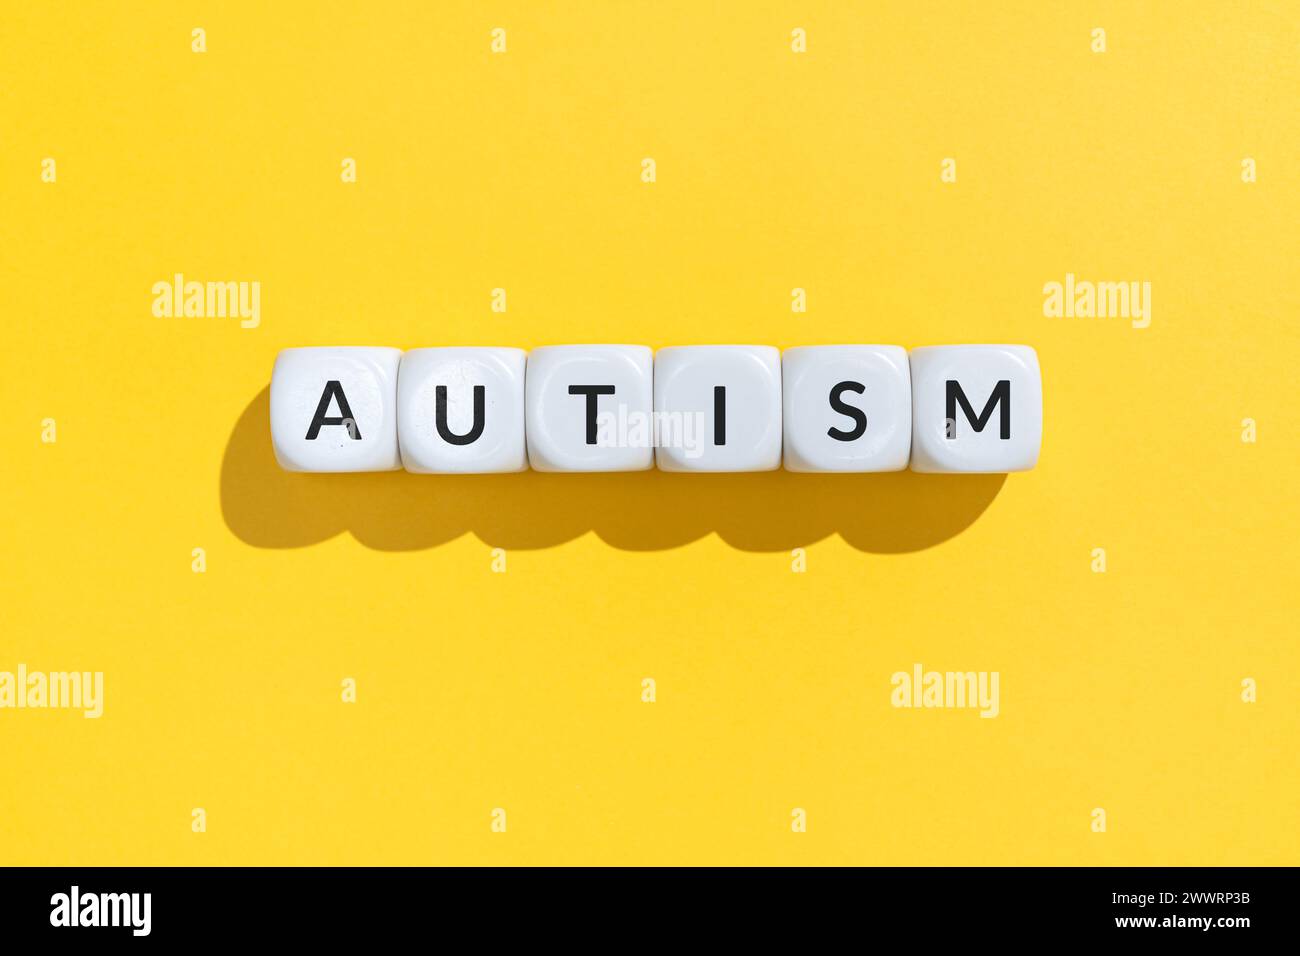 Autismuswort auf weißen Würfelblöcken isoliert auf gelbem Hintergrund Stockfoto